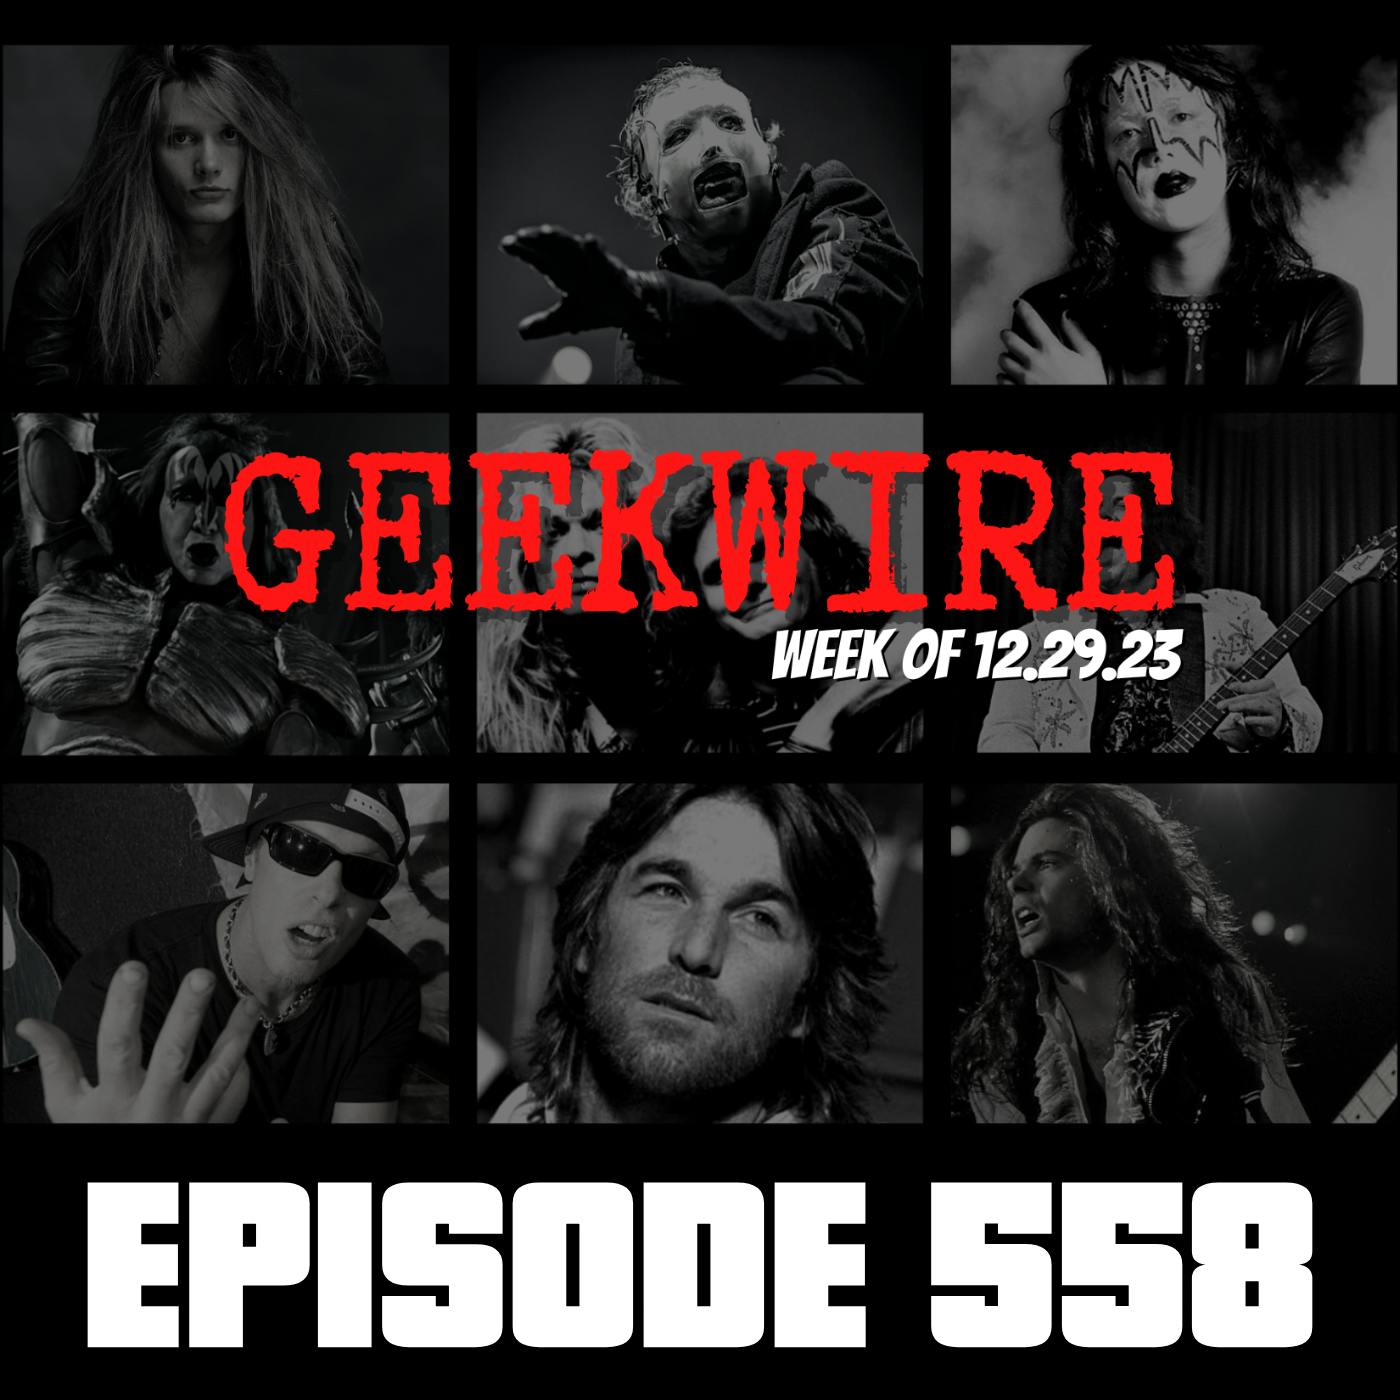 Geekwire Week of 12.29.23 - Ep558